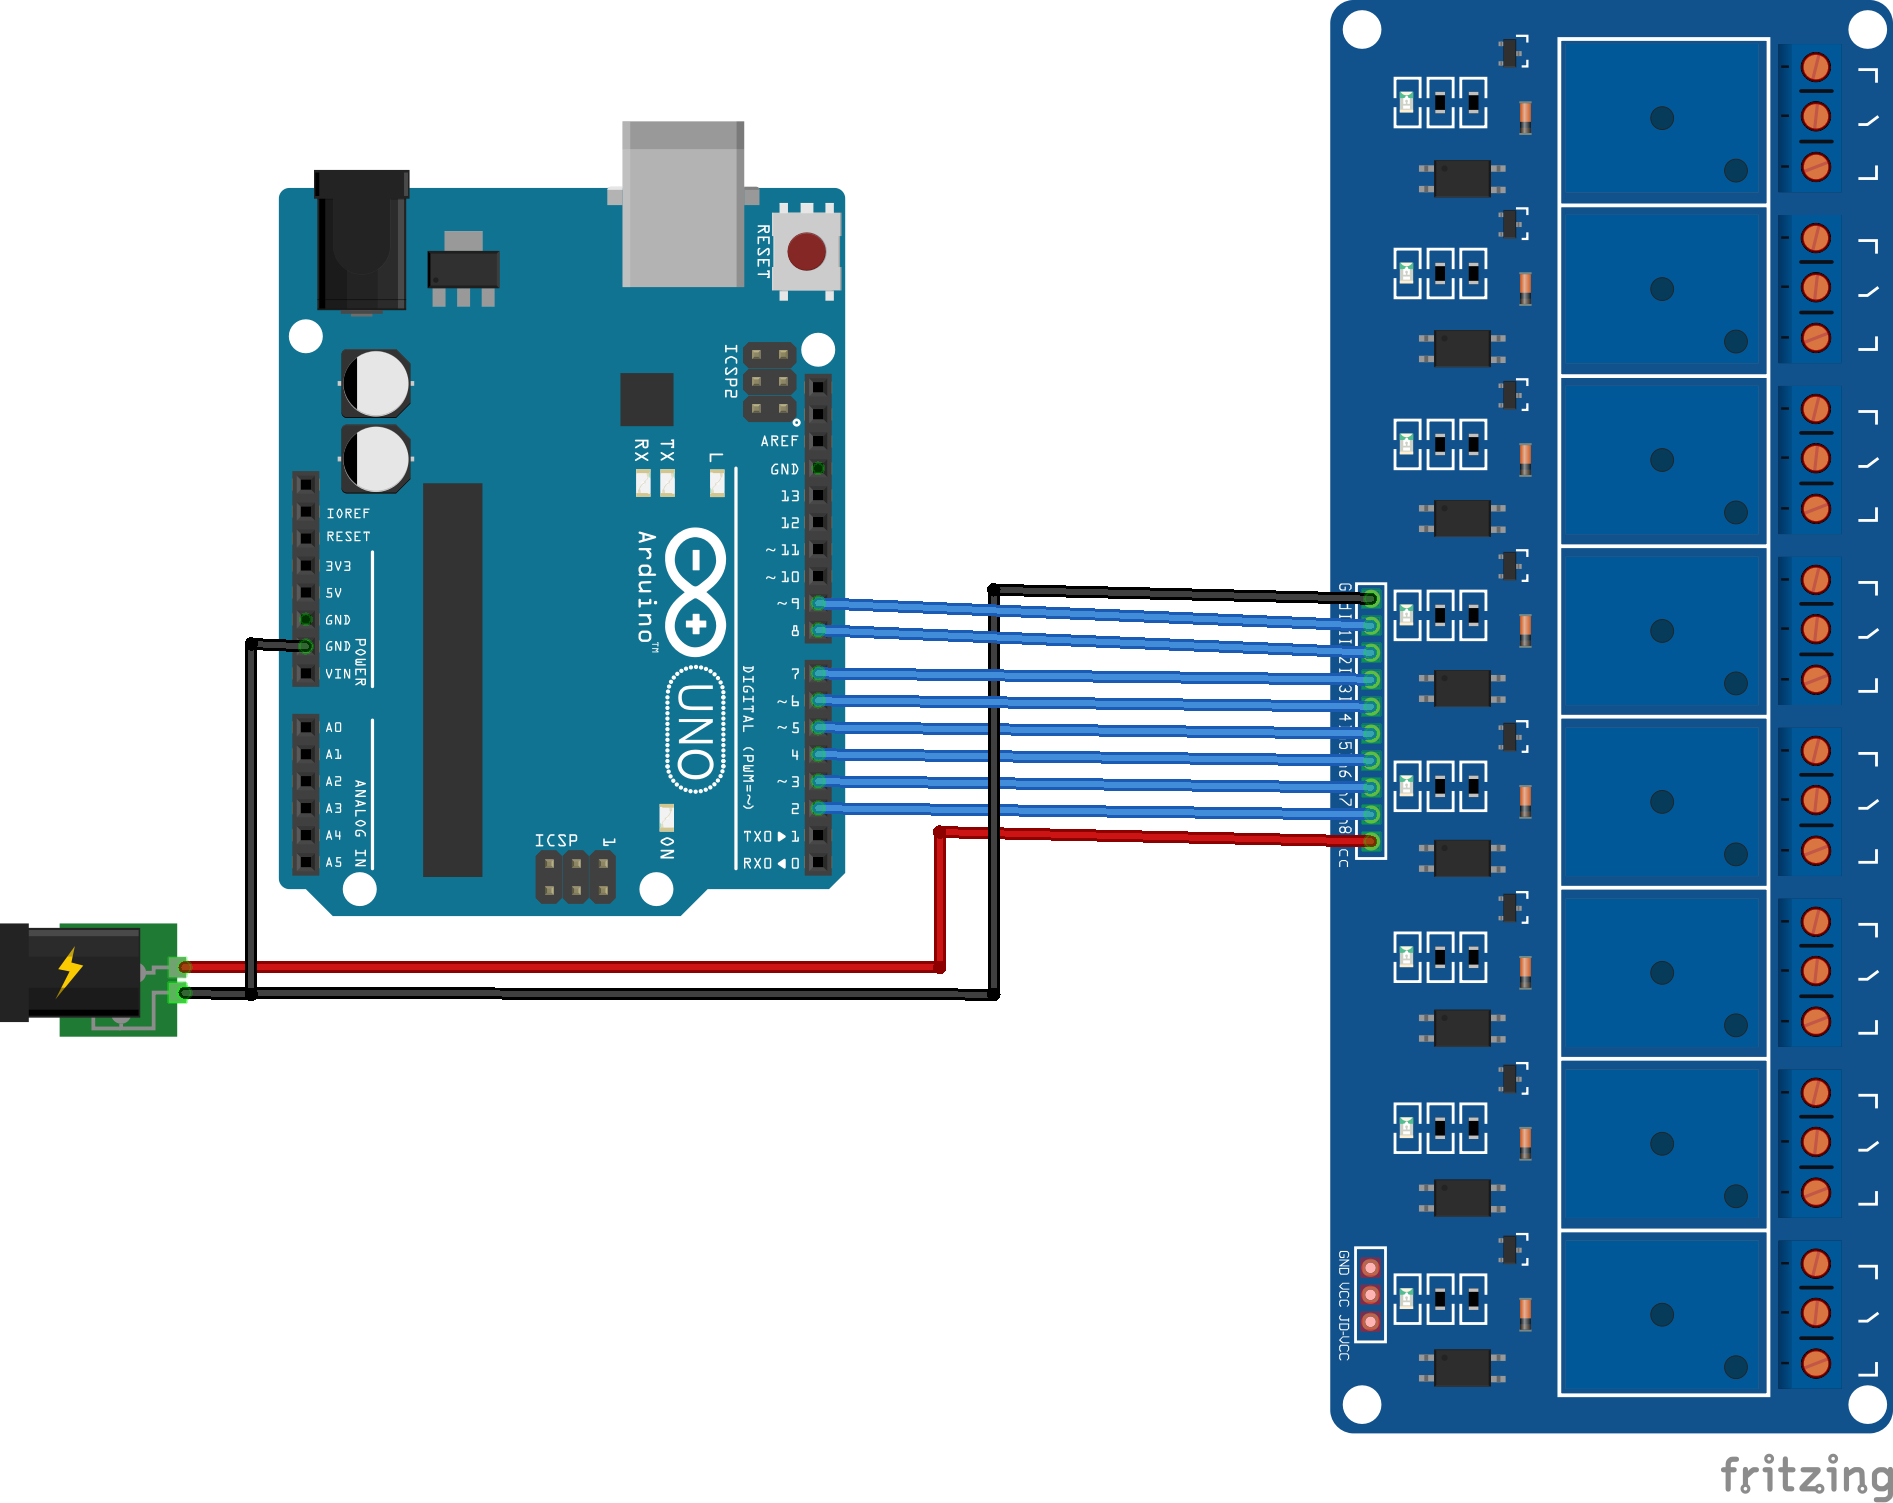 Utilisation d'un module relais multicanal avec Arduino • AranaCorp